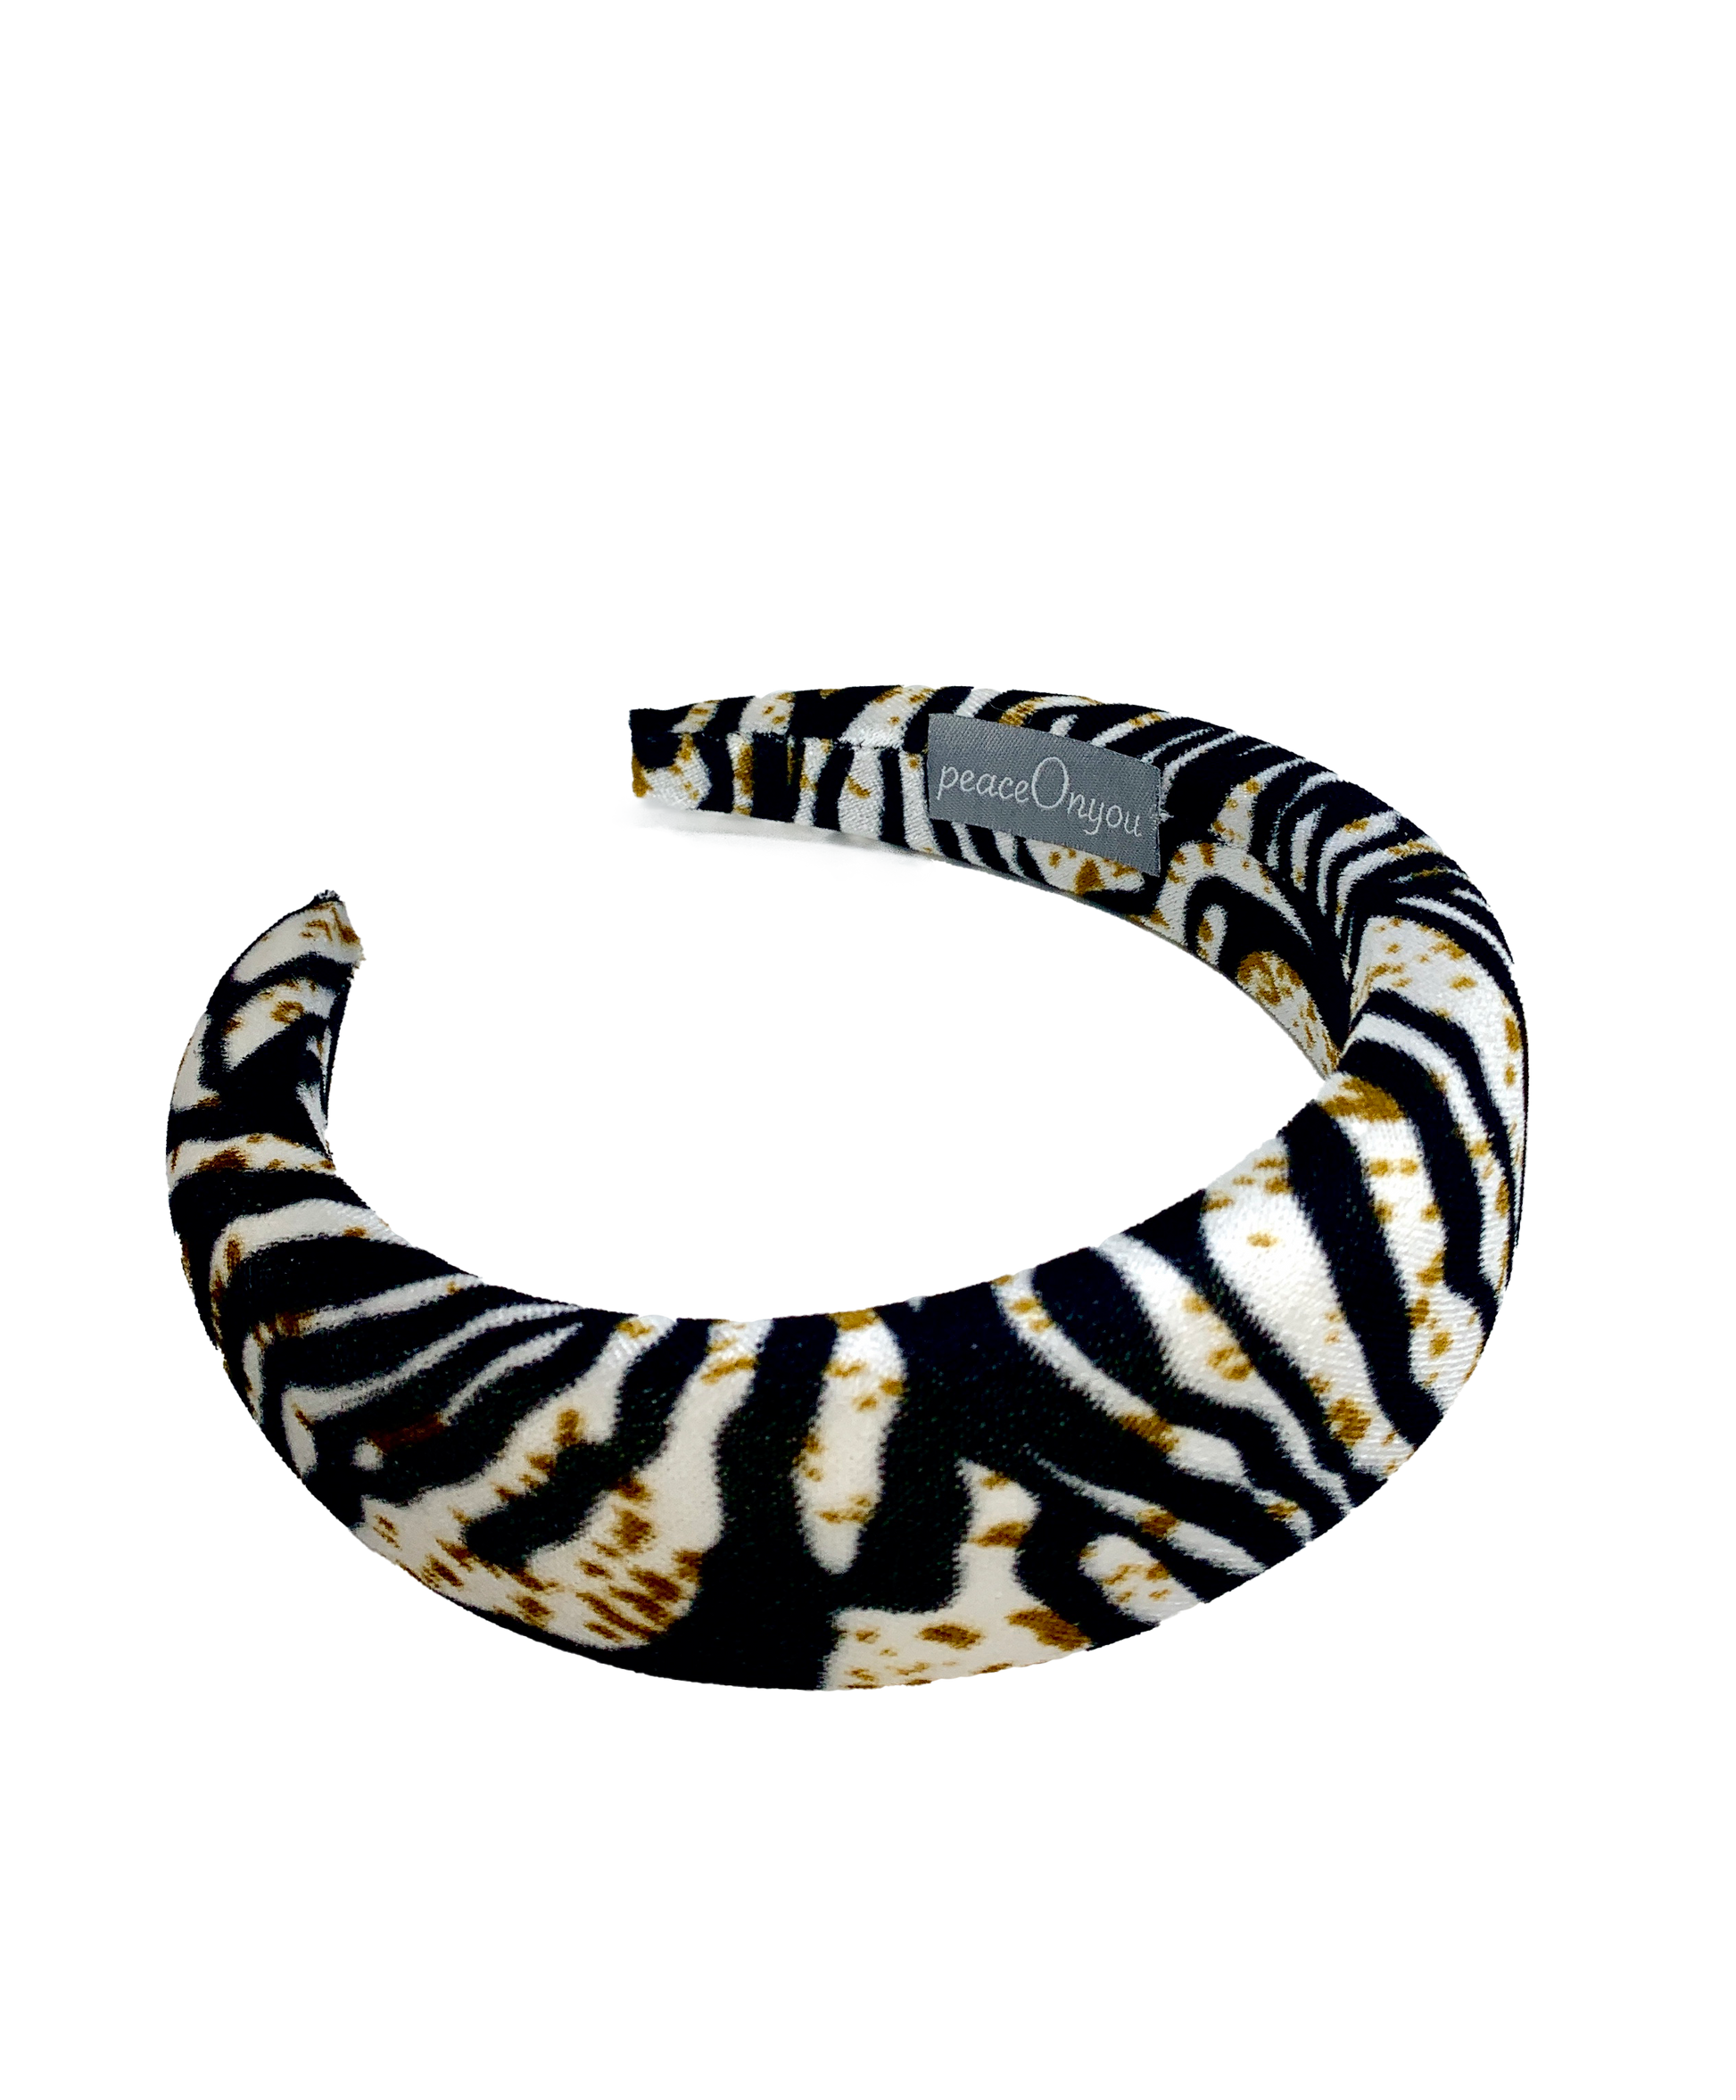 Padded velvet headband in ltiger pattern